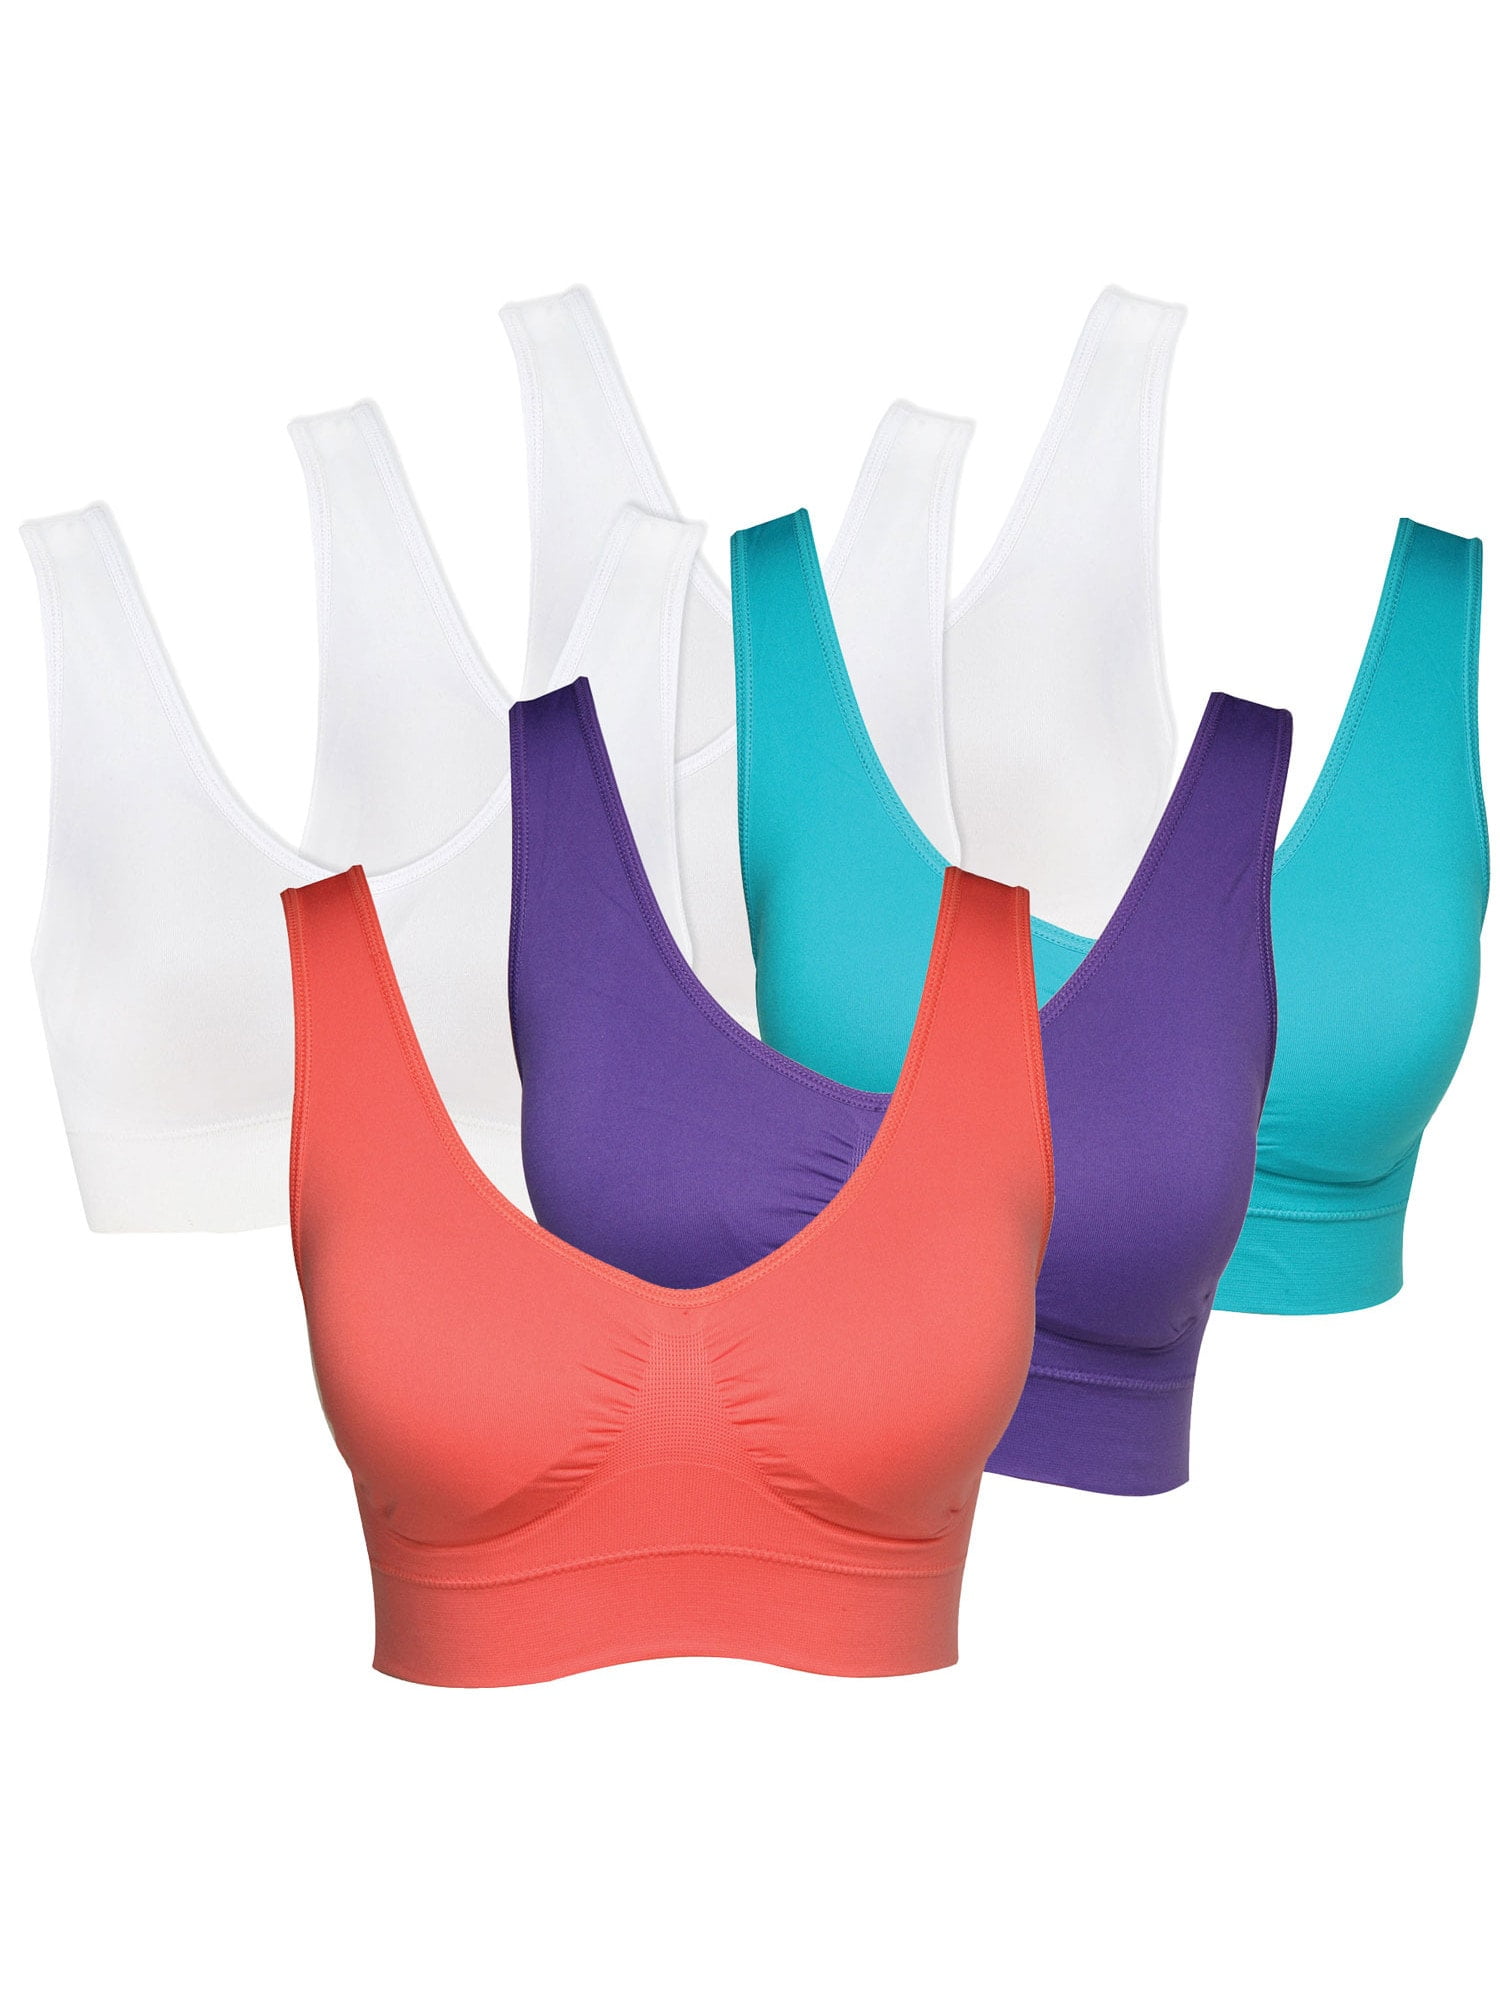 Women's Genie Bra 6-Pack - Comfort Sports Bras - 3 White, 3 Brights - -  Walmart.com